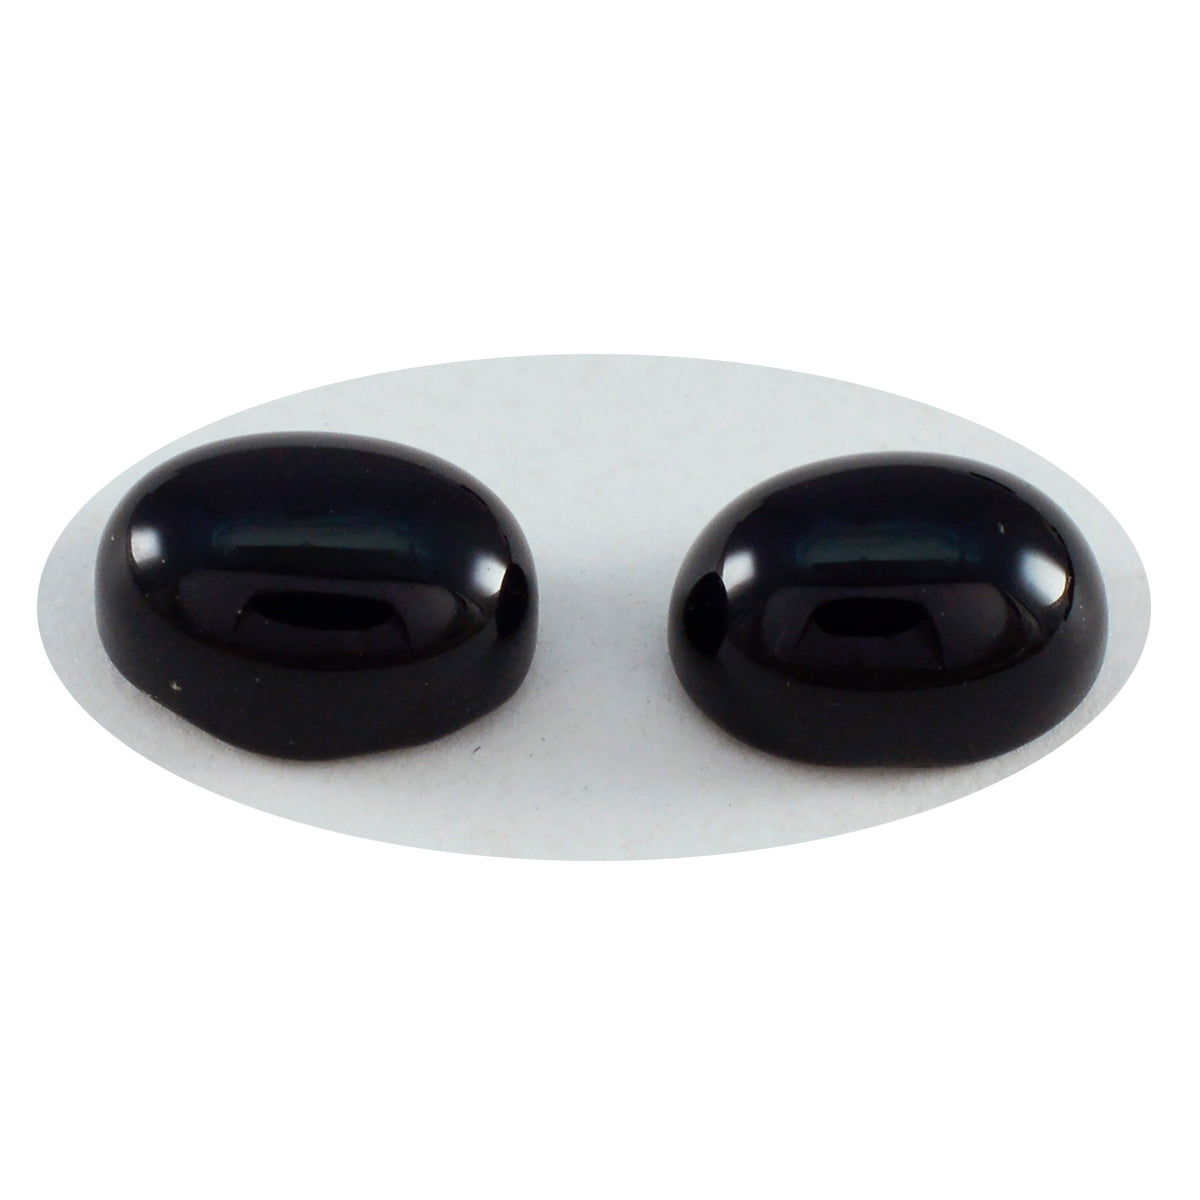 Riyogems 1 pieza cabujón de ónix negro 8x10mm forma ovalada piedra suelta de calidad encantadora